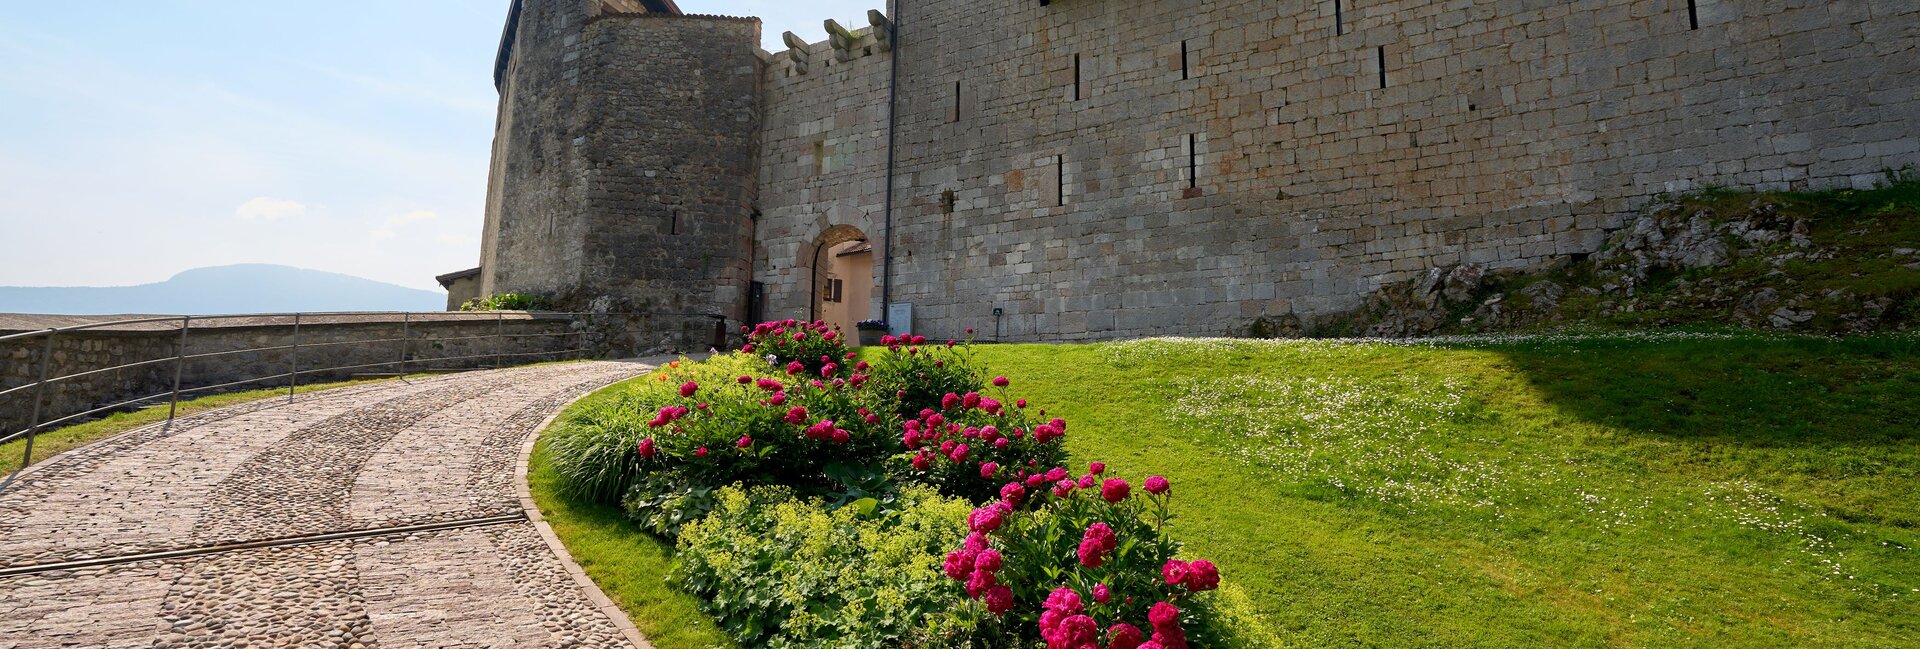 Stenico Castle